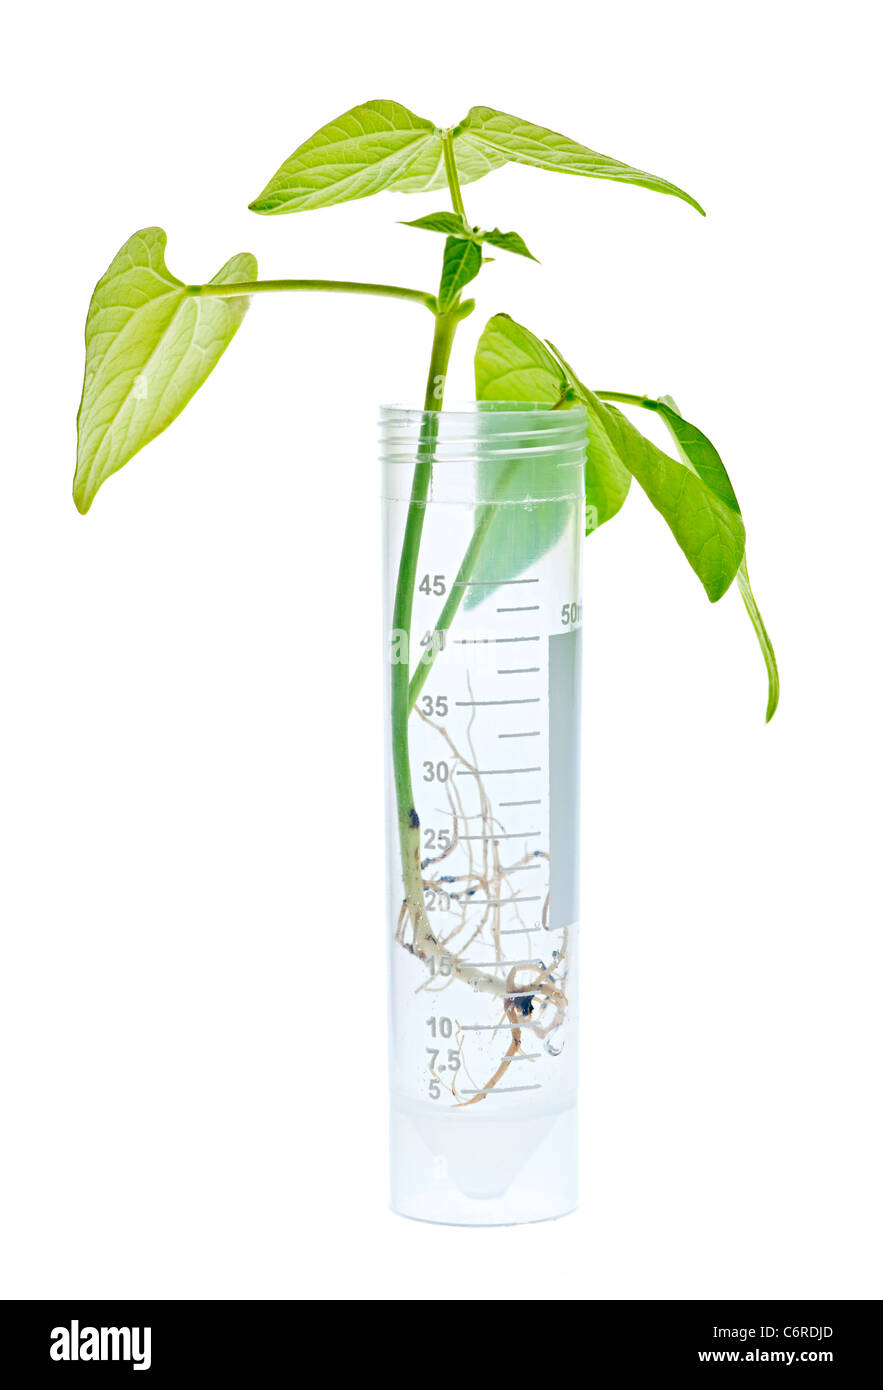 Gentechnisch veränderte Pflanze Setzling im Reagenzglas isoliert auf weiss Stockfoto